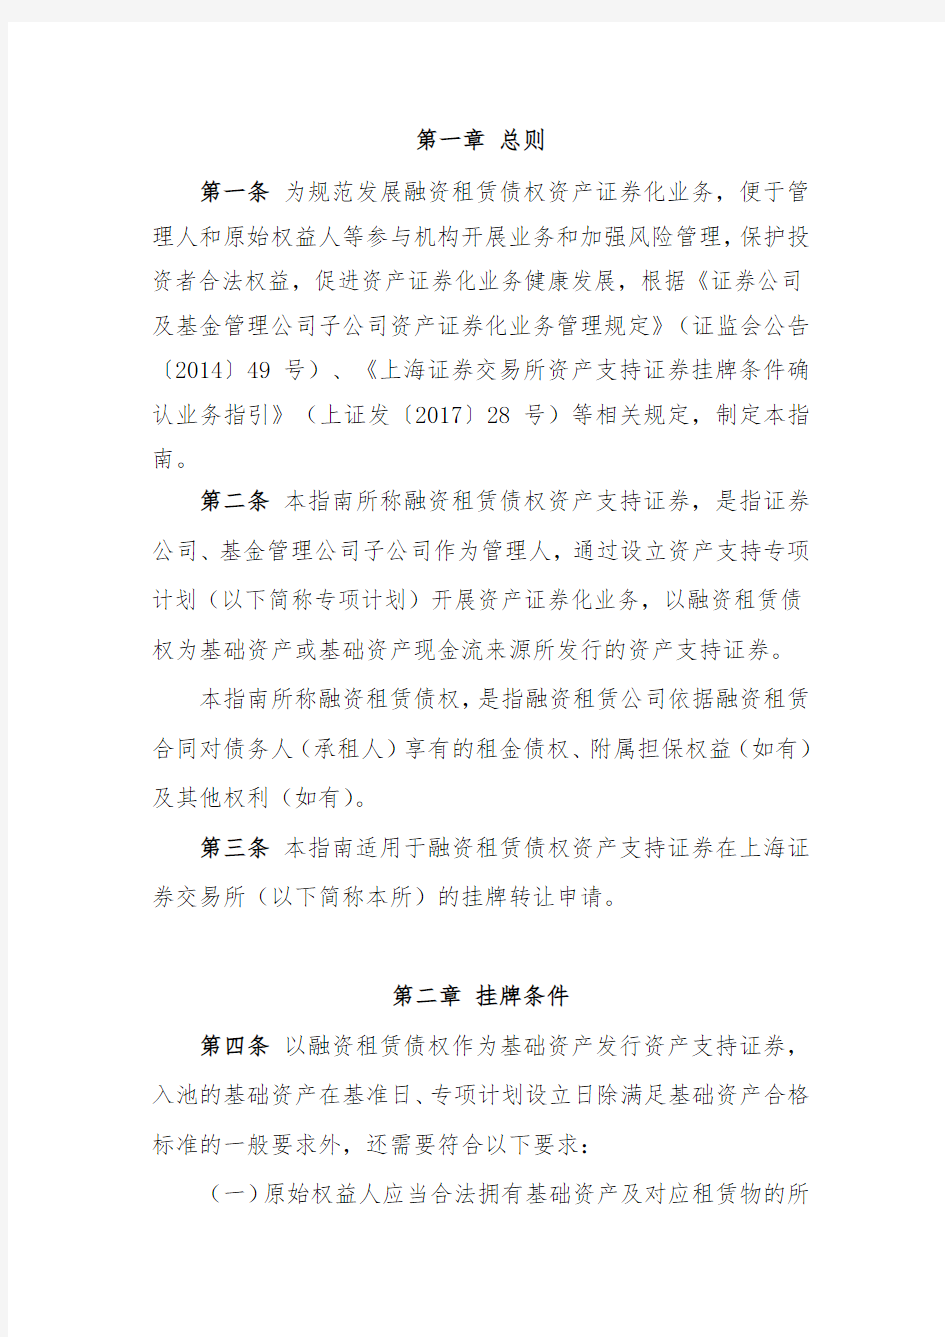 上海证券交易所融资租赁债权资产支持证券挂牌条件确认指南